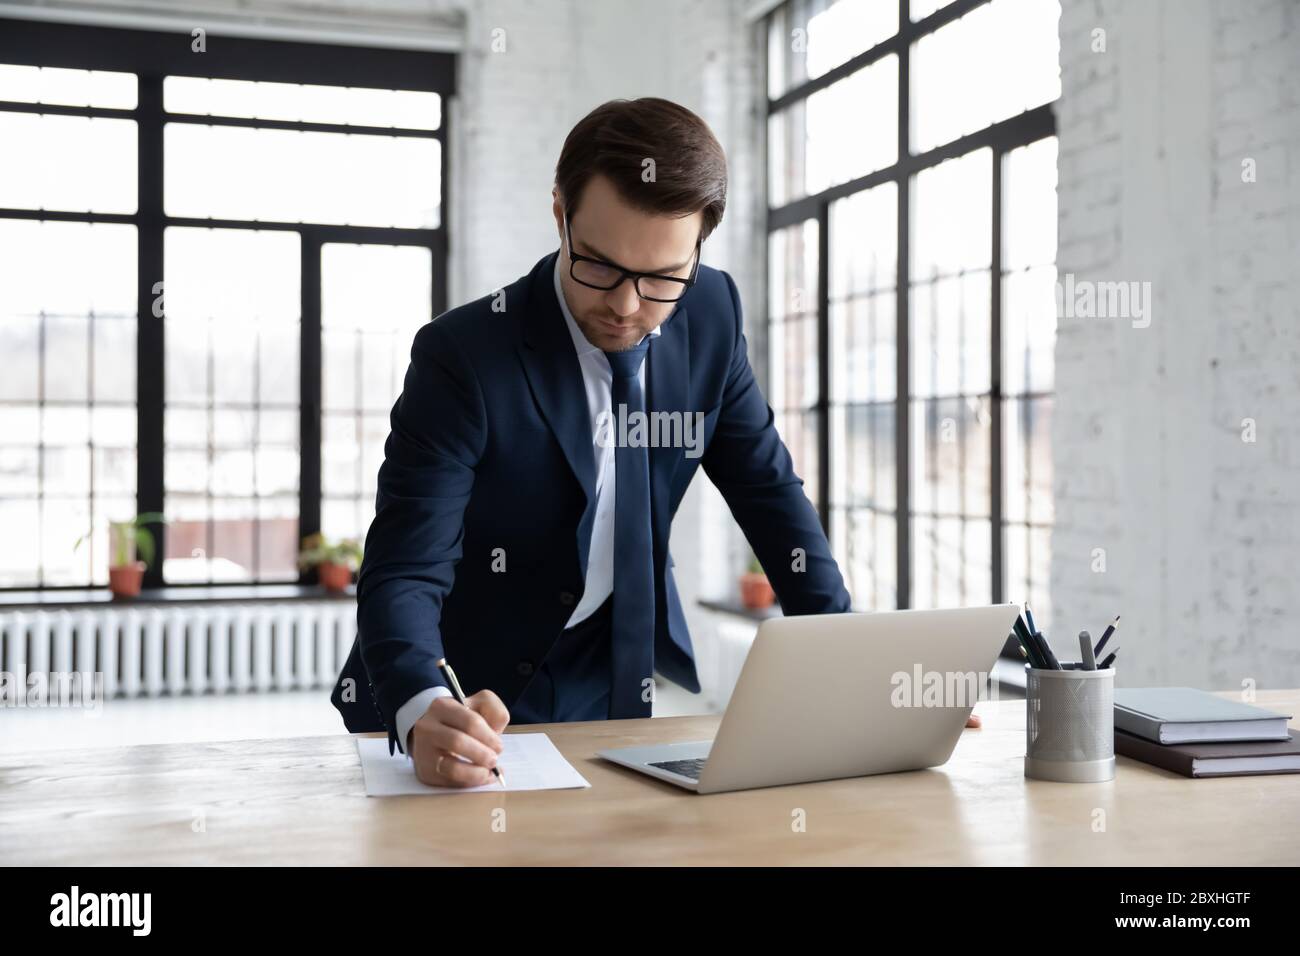 Un homme d'affaires sérieux travaille sur un ordinateur portable pour prendre des notes Banque D'Images